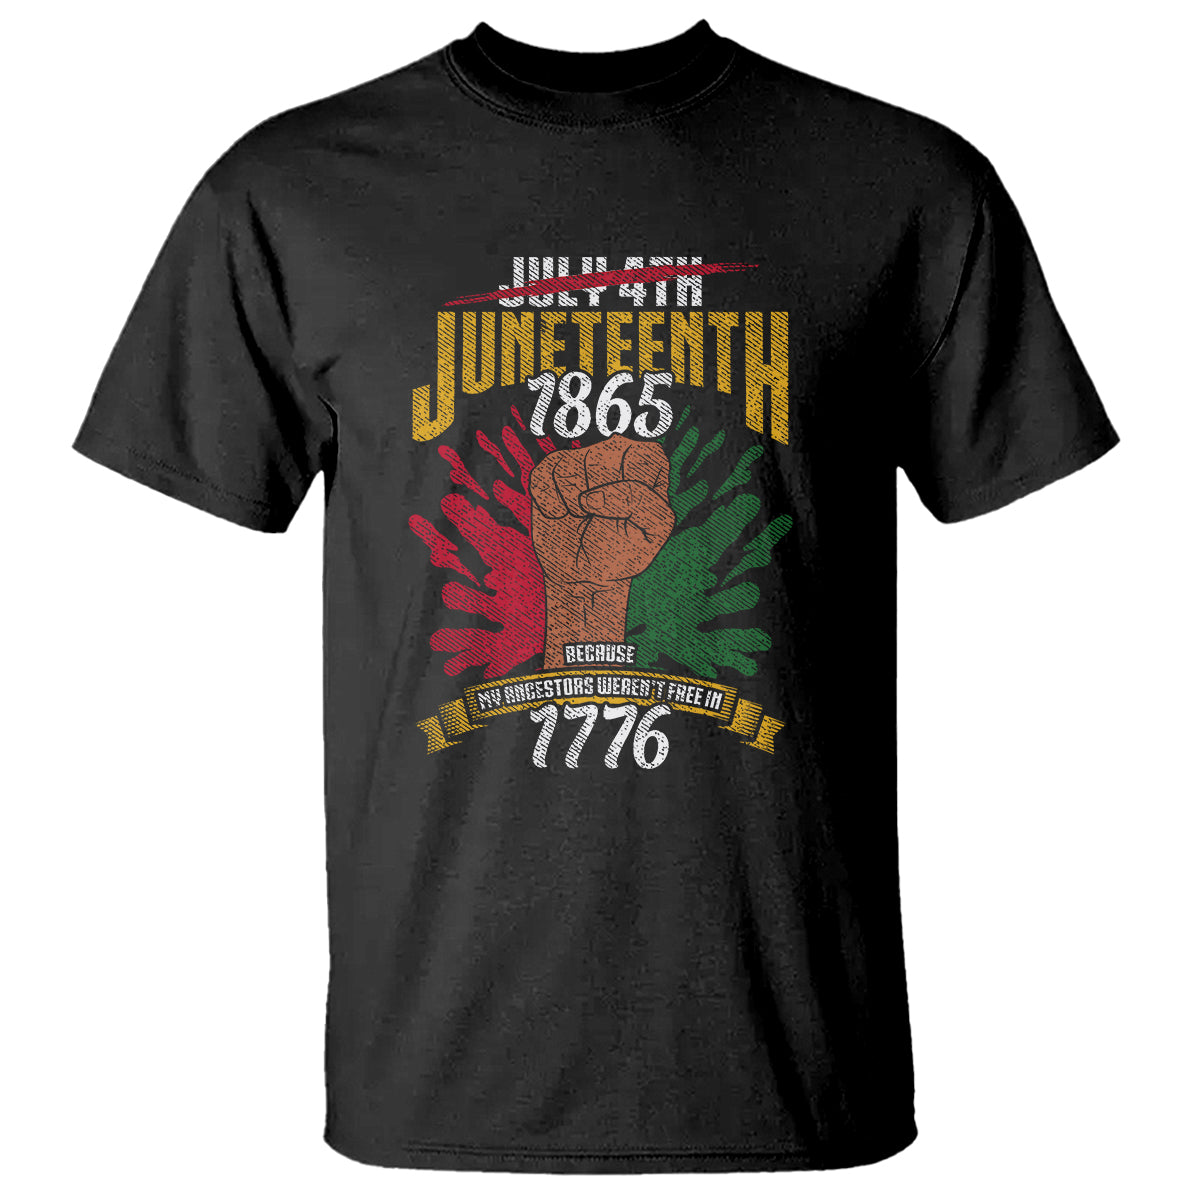 Juneteenth Since 1865 T Shirt My Ancestors Weren't Free In 1776 TS01 Black Printyourwear